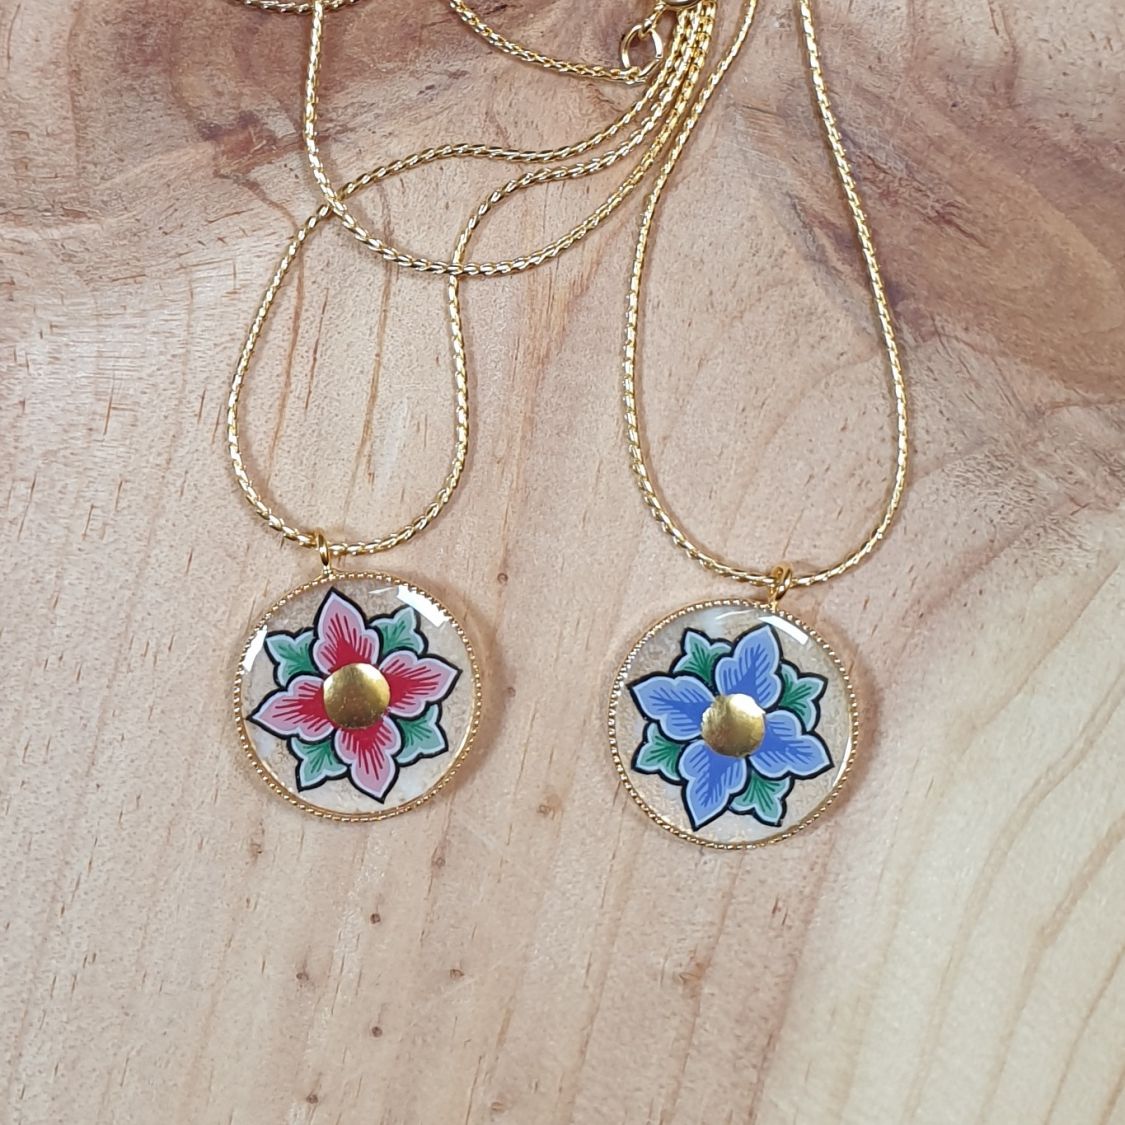 Collier pendentif printanier fleur rose ou bleue sur chaîne dorée